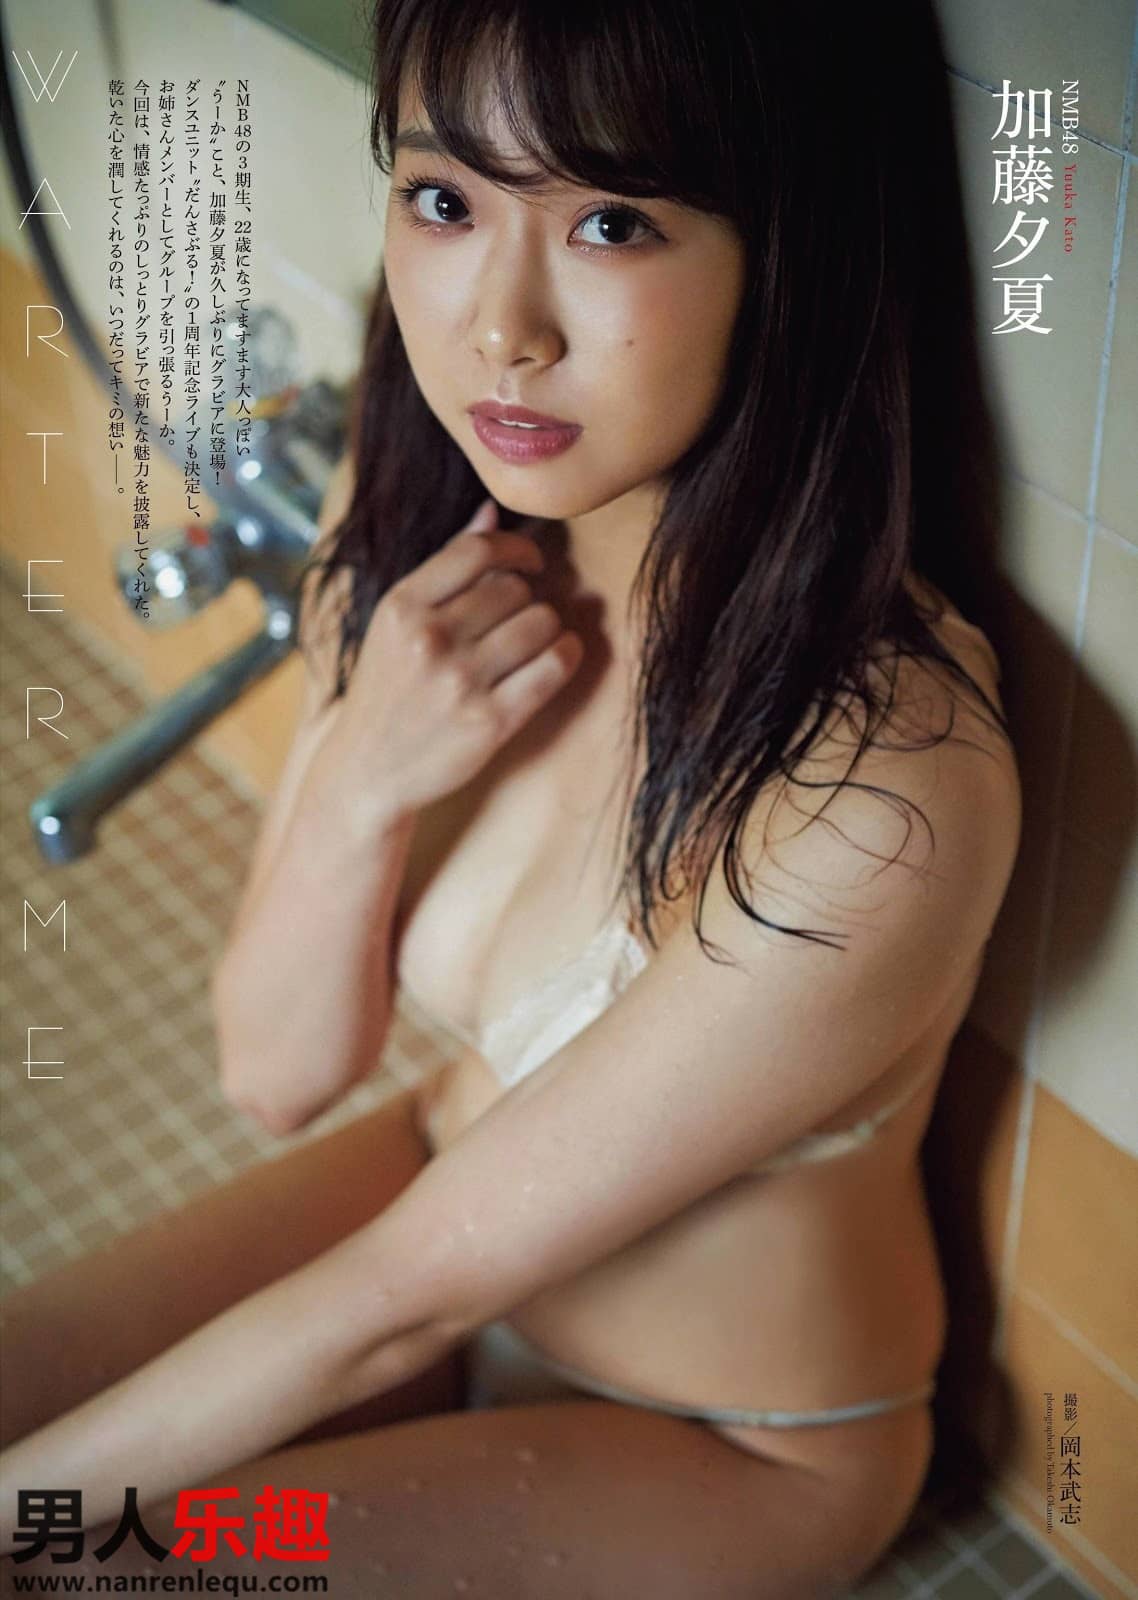 NMB48《加藤夕夏》邻家女孩笑容甜美-第29张图片